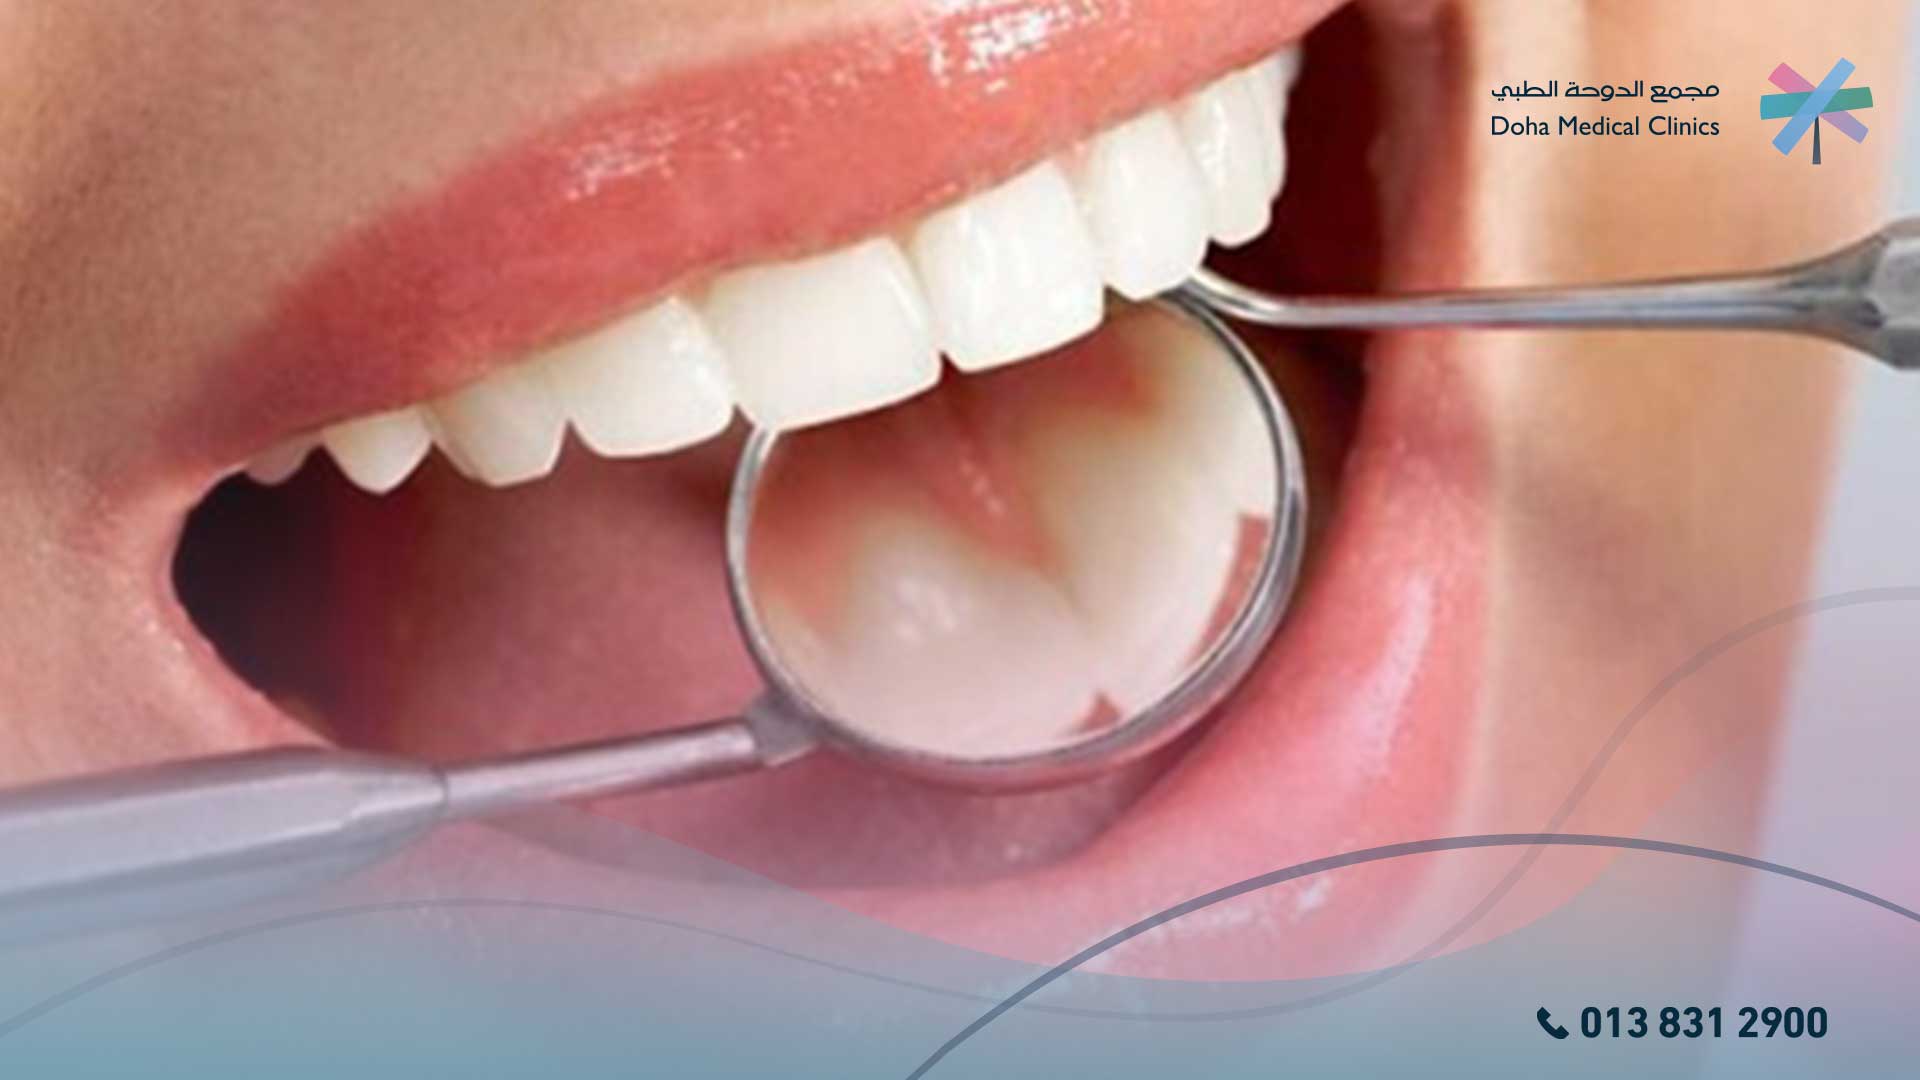 مدة شفاء خراج الأسنان الداخل